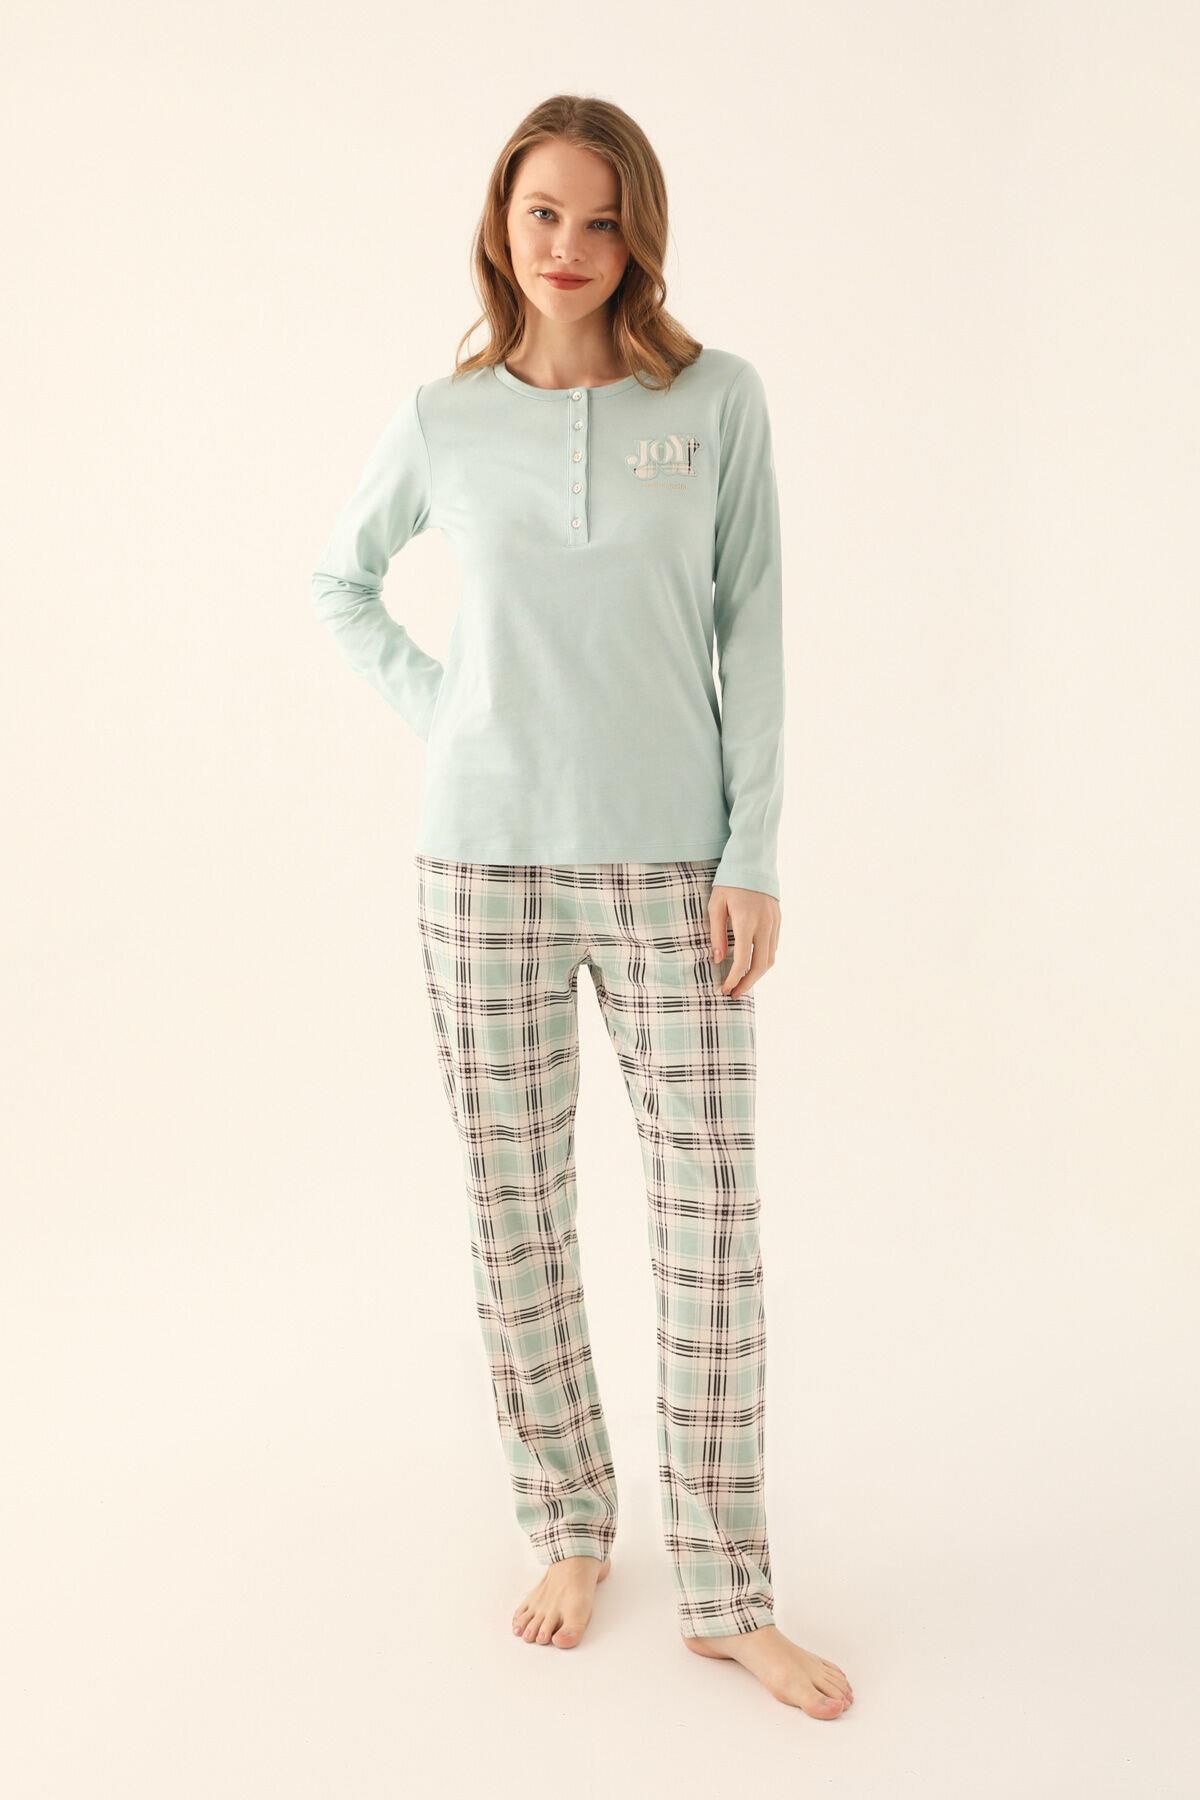 Pierre Cardin 8705 Büyük Beden Kadın Uzun Kol Pijama Takım